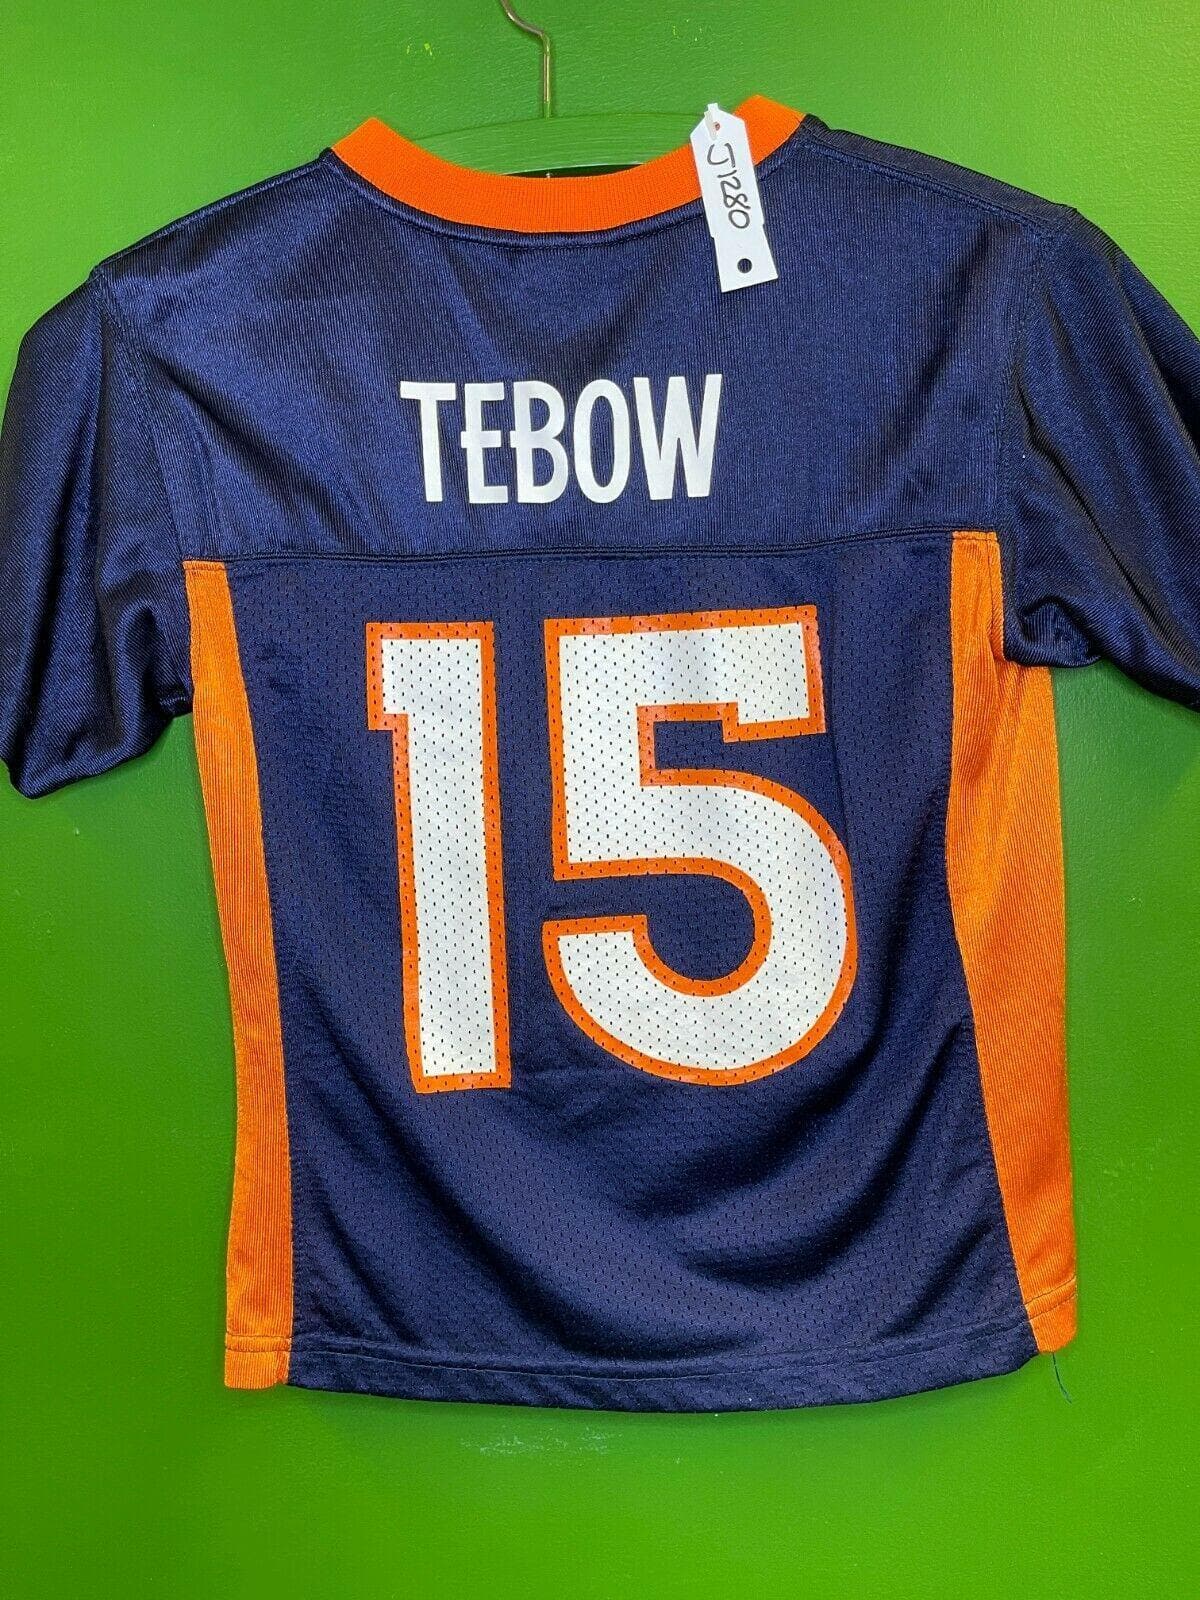 NFL Denver Broncos Tim Tebow #15 Jersey Kids' Medium 5-6